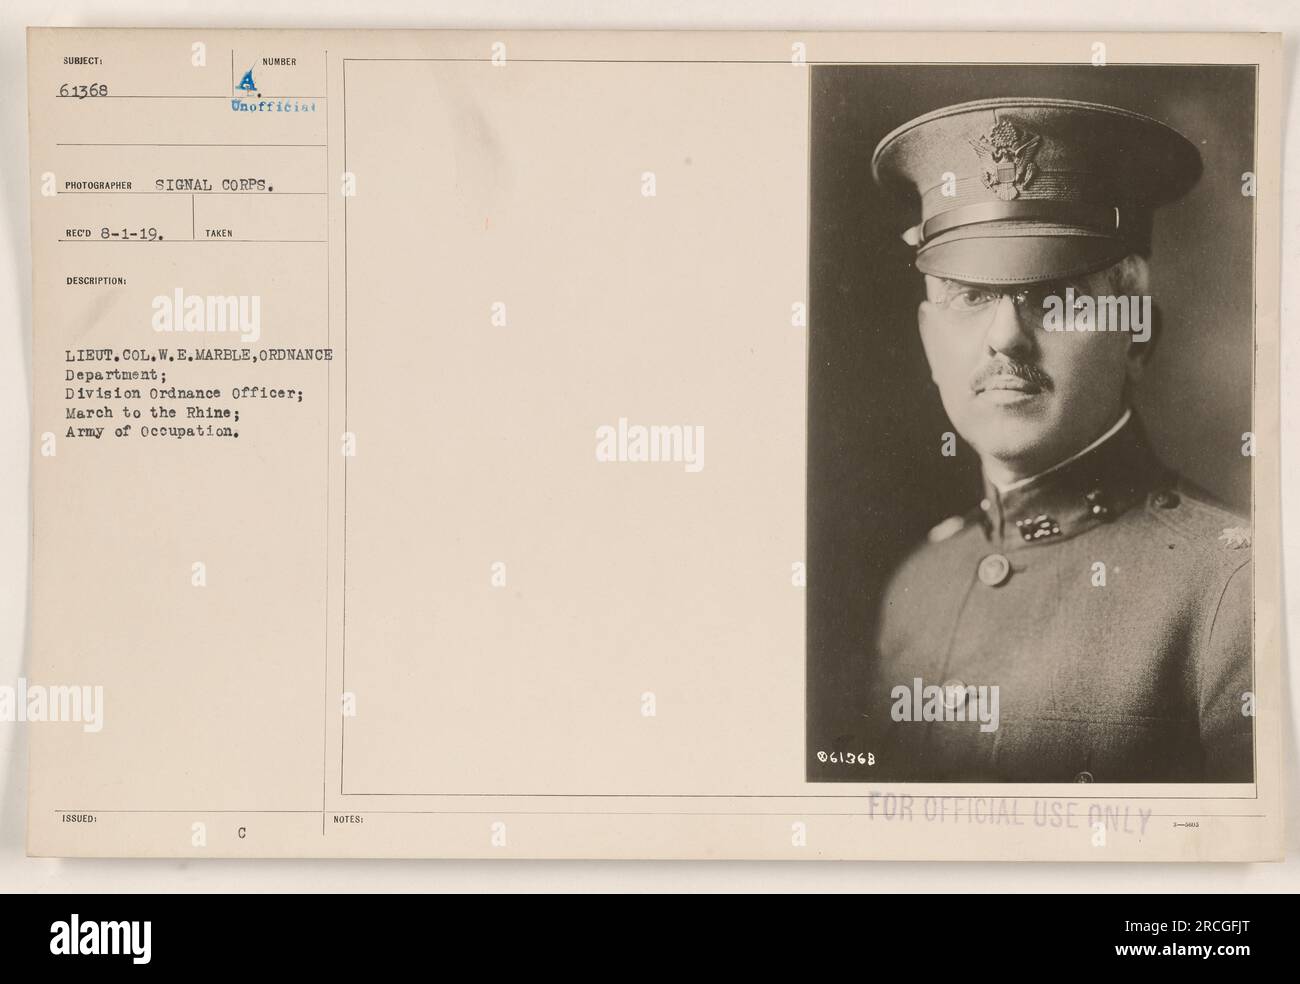 Oberstleutnant W.E. Marble, vom Ordnanzamt, diente während des Marsches zum Rhein als Divisionsoffizier, als Teil der Besatzungsarmee. Dieses Foto, aufgenommen vom Signalkorps und erhalten am 1. August 1919, zeigt LT. Oberstleutnant Marble. Die Beschreibungsnummer ist inoffiziell und nur zur amtlichen Verwendung bestimmt. Stockfoto